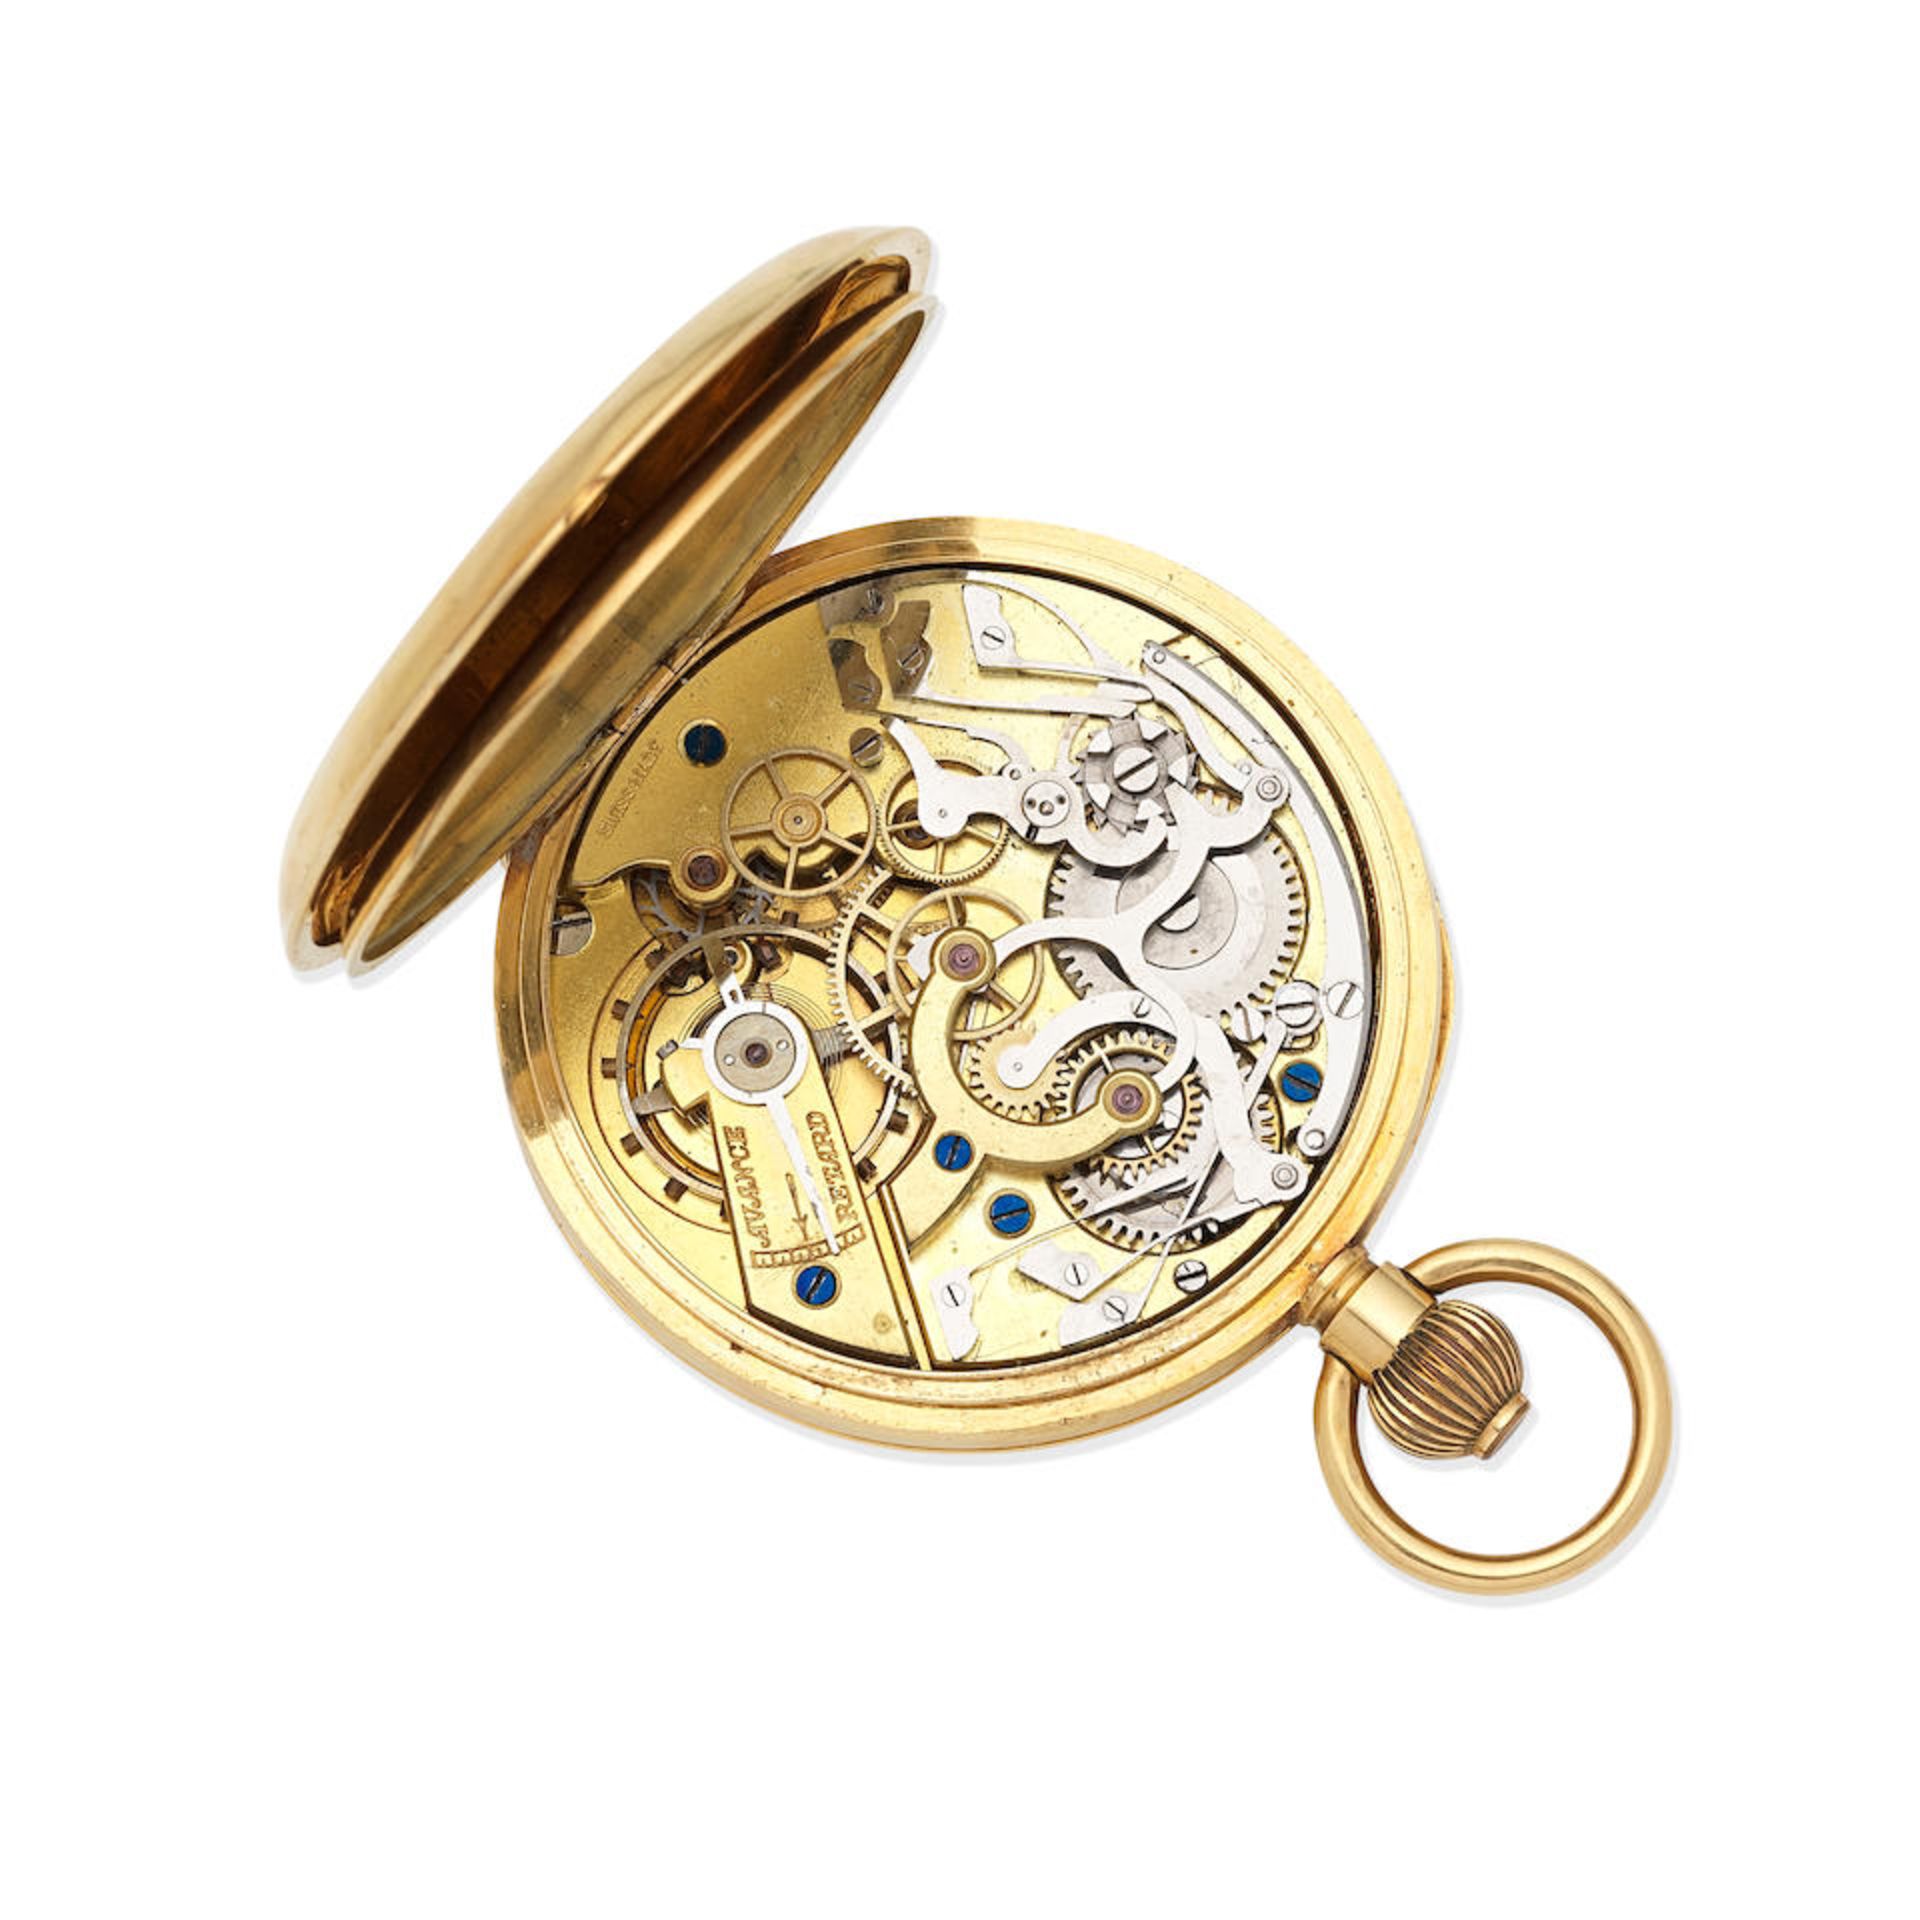 An 18K gold keyless wind open face chronograph pocket watch Circa 1900 - Bild 3 aus 3